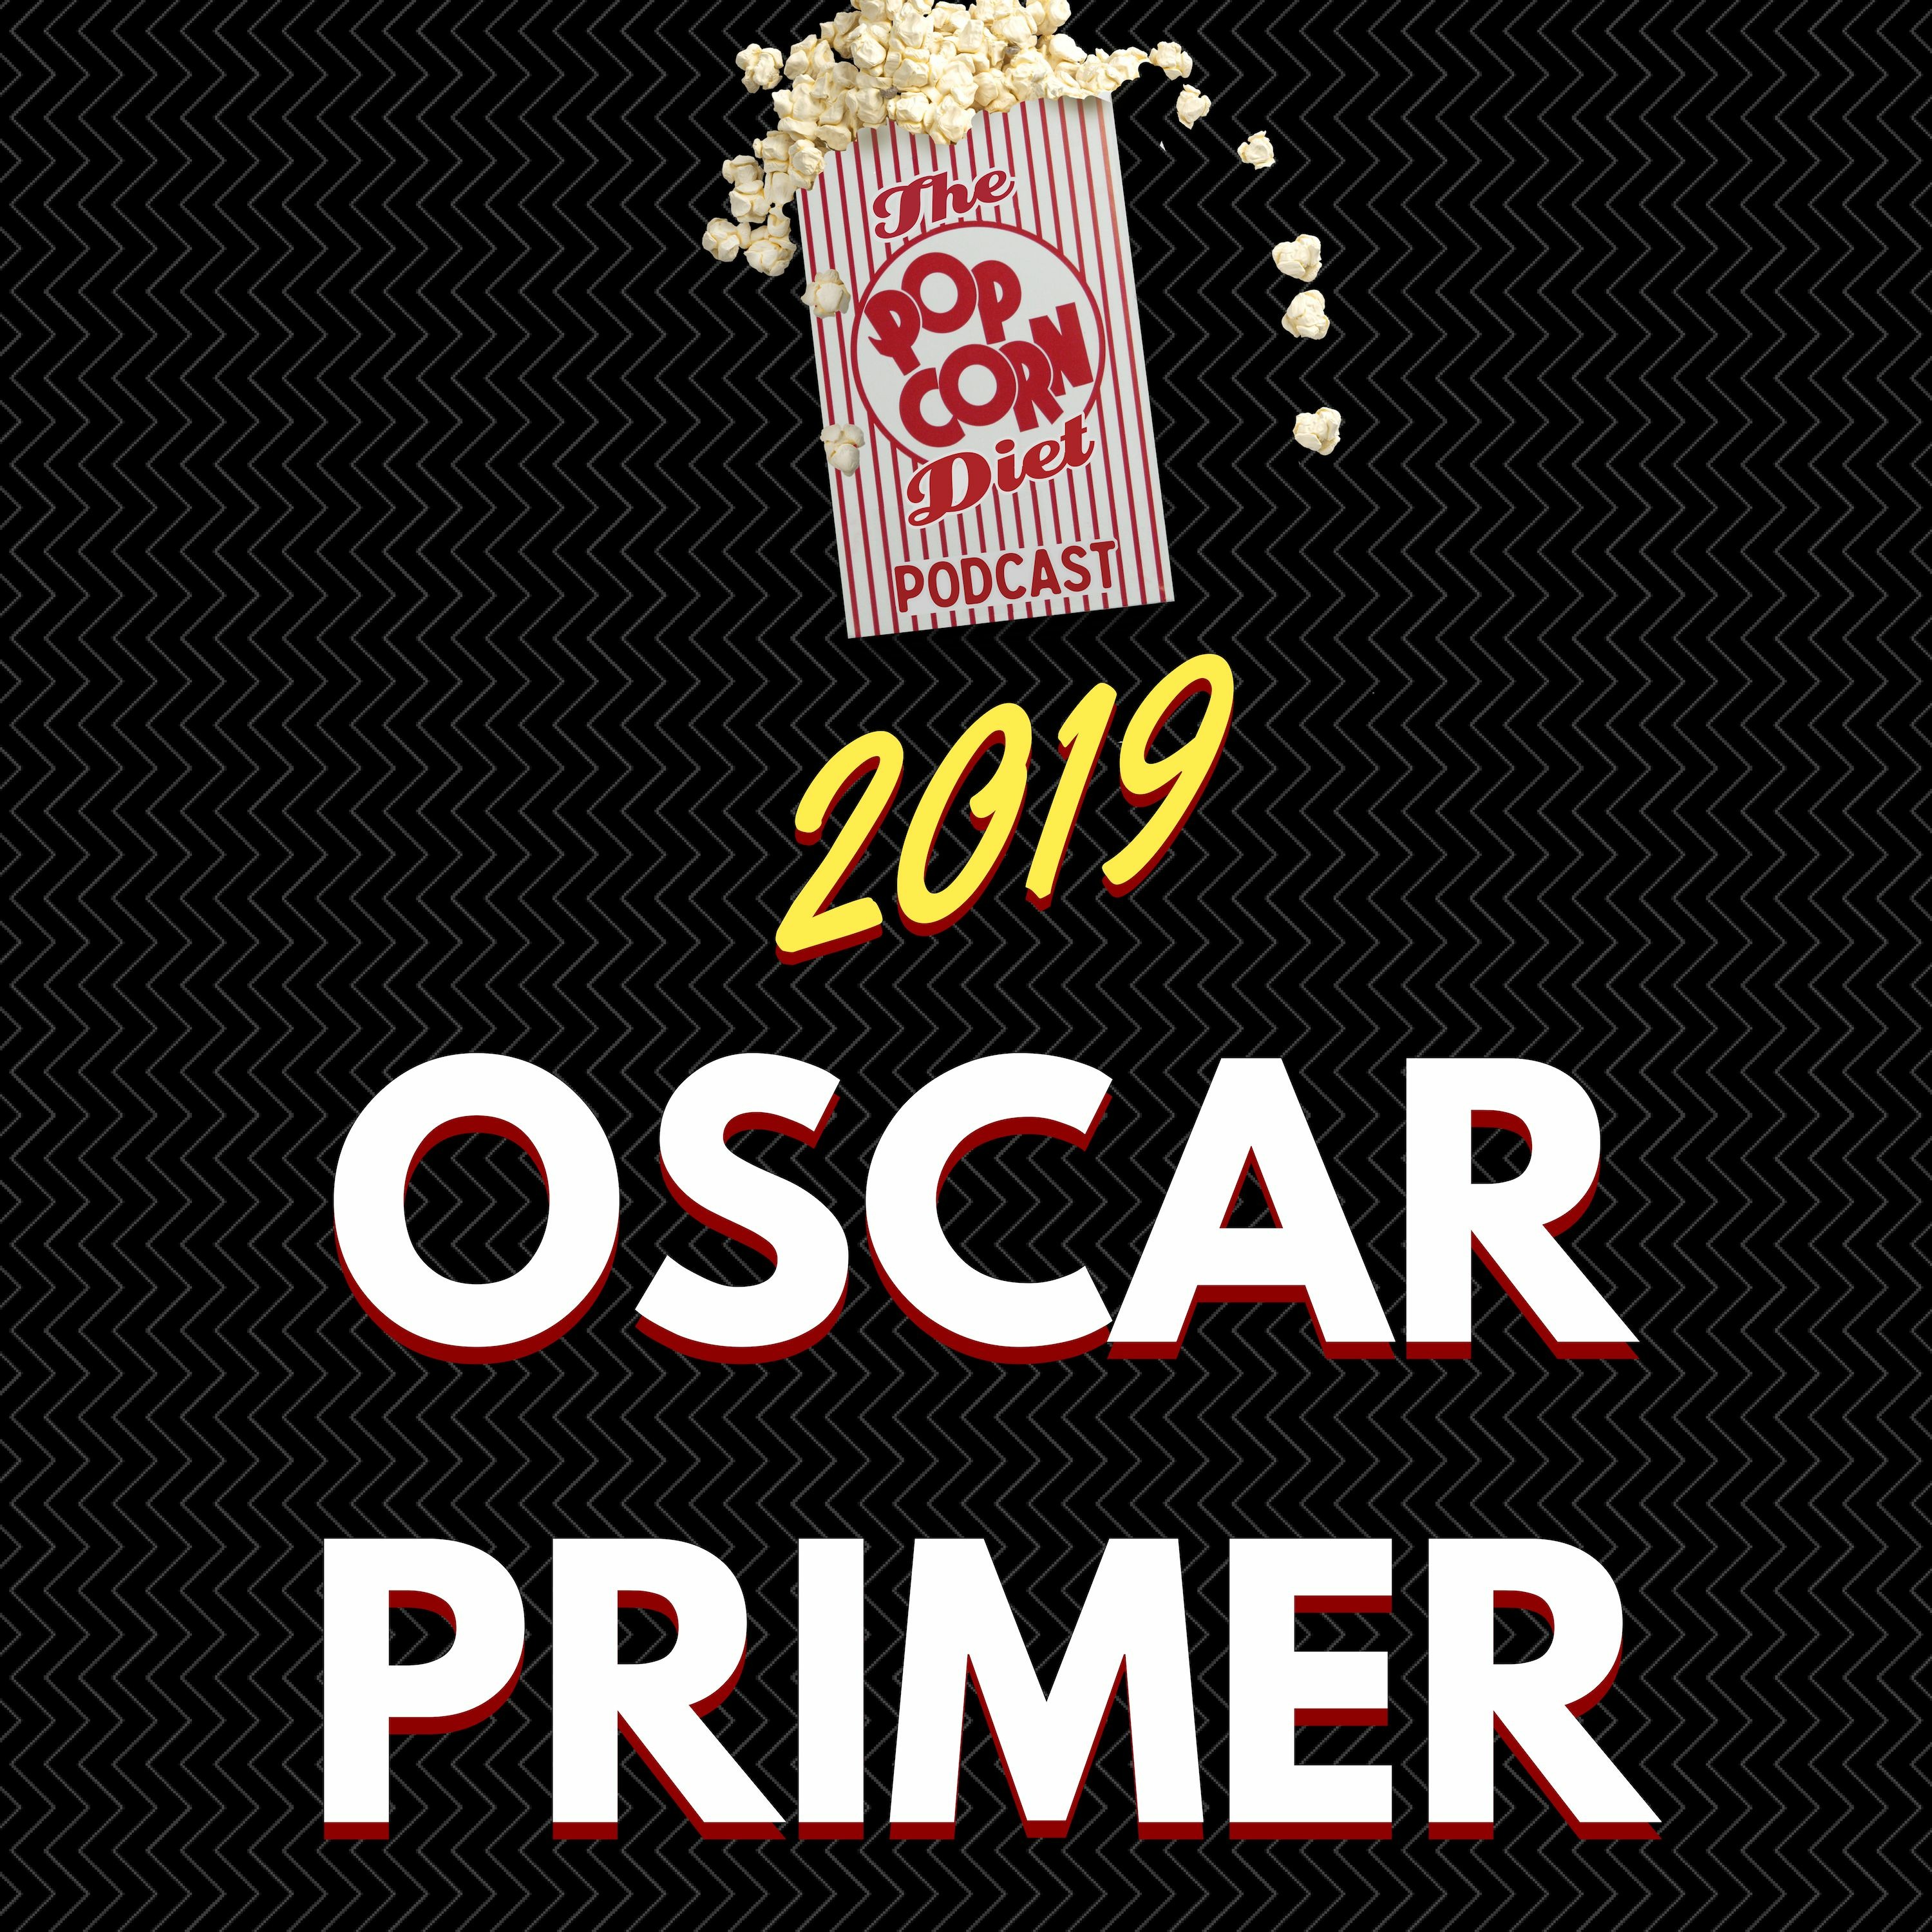 2019 Oscar Primer: The Ballad of Buster Scruggs